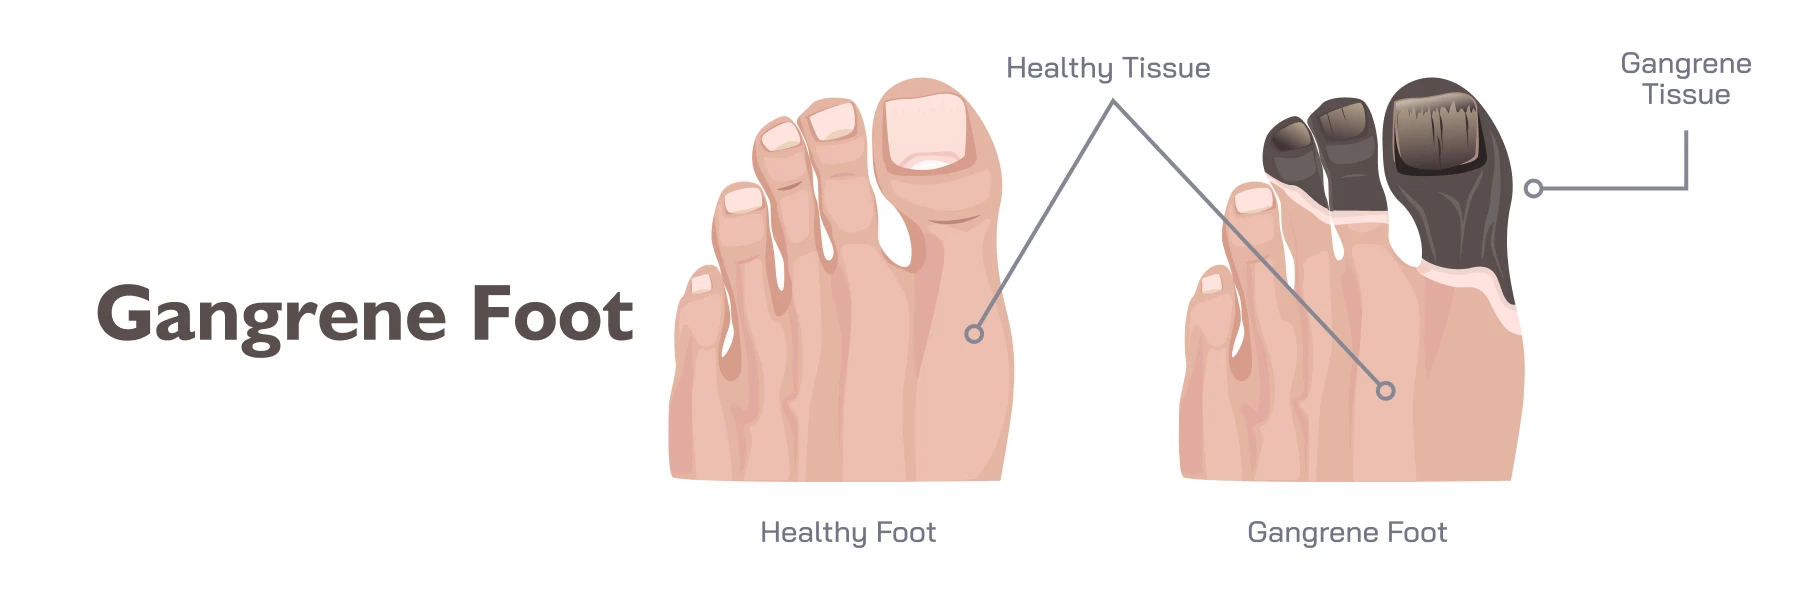 Gangrene Foot